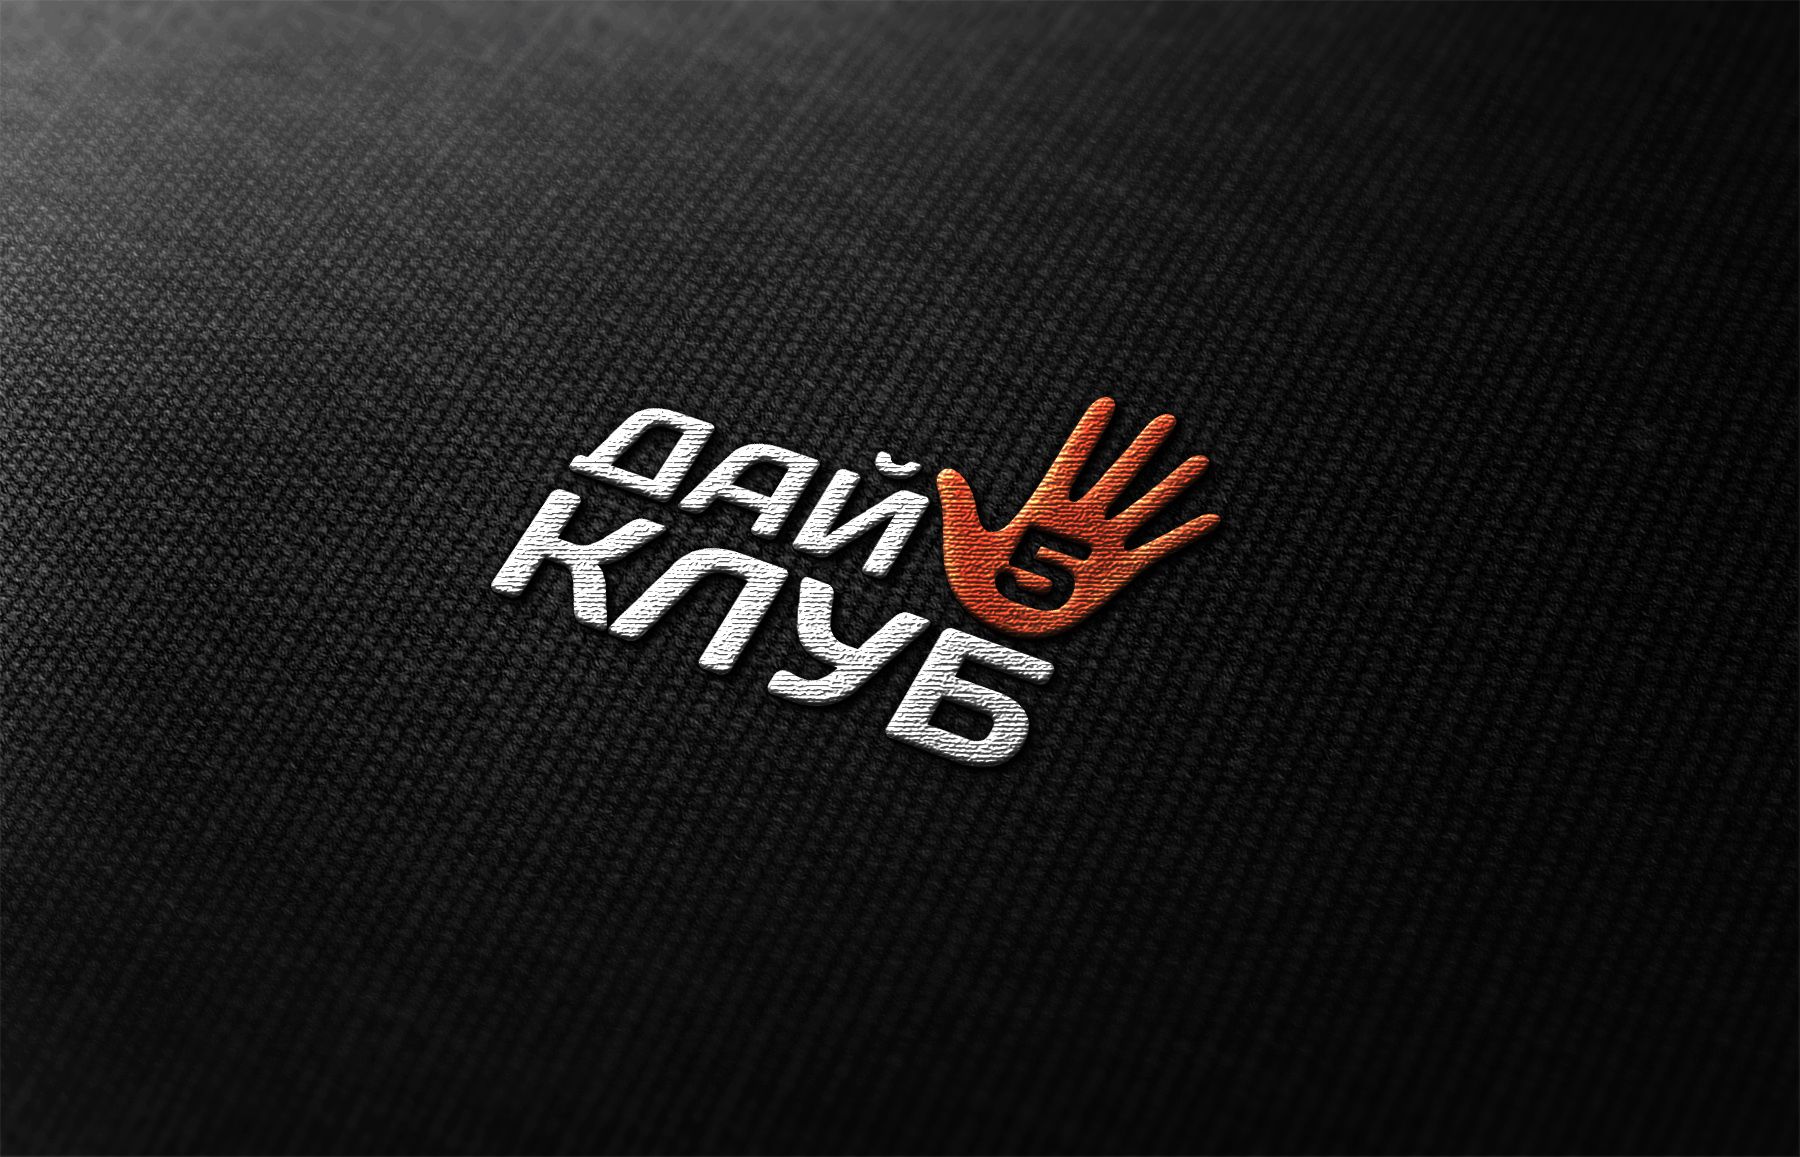 Логотип для Дай 5 Клуб (day5club) - дизайнер comicdm